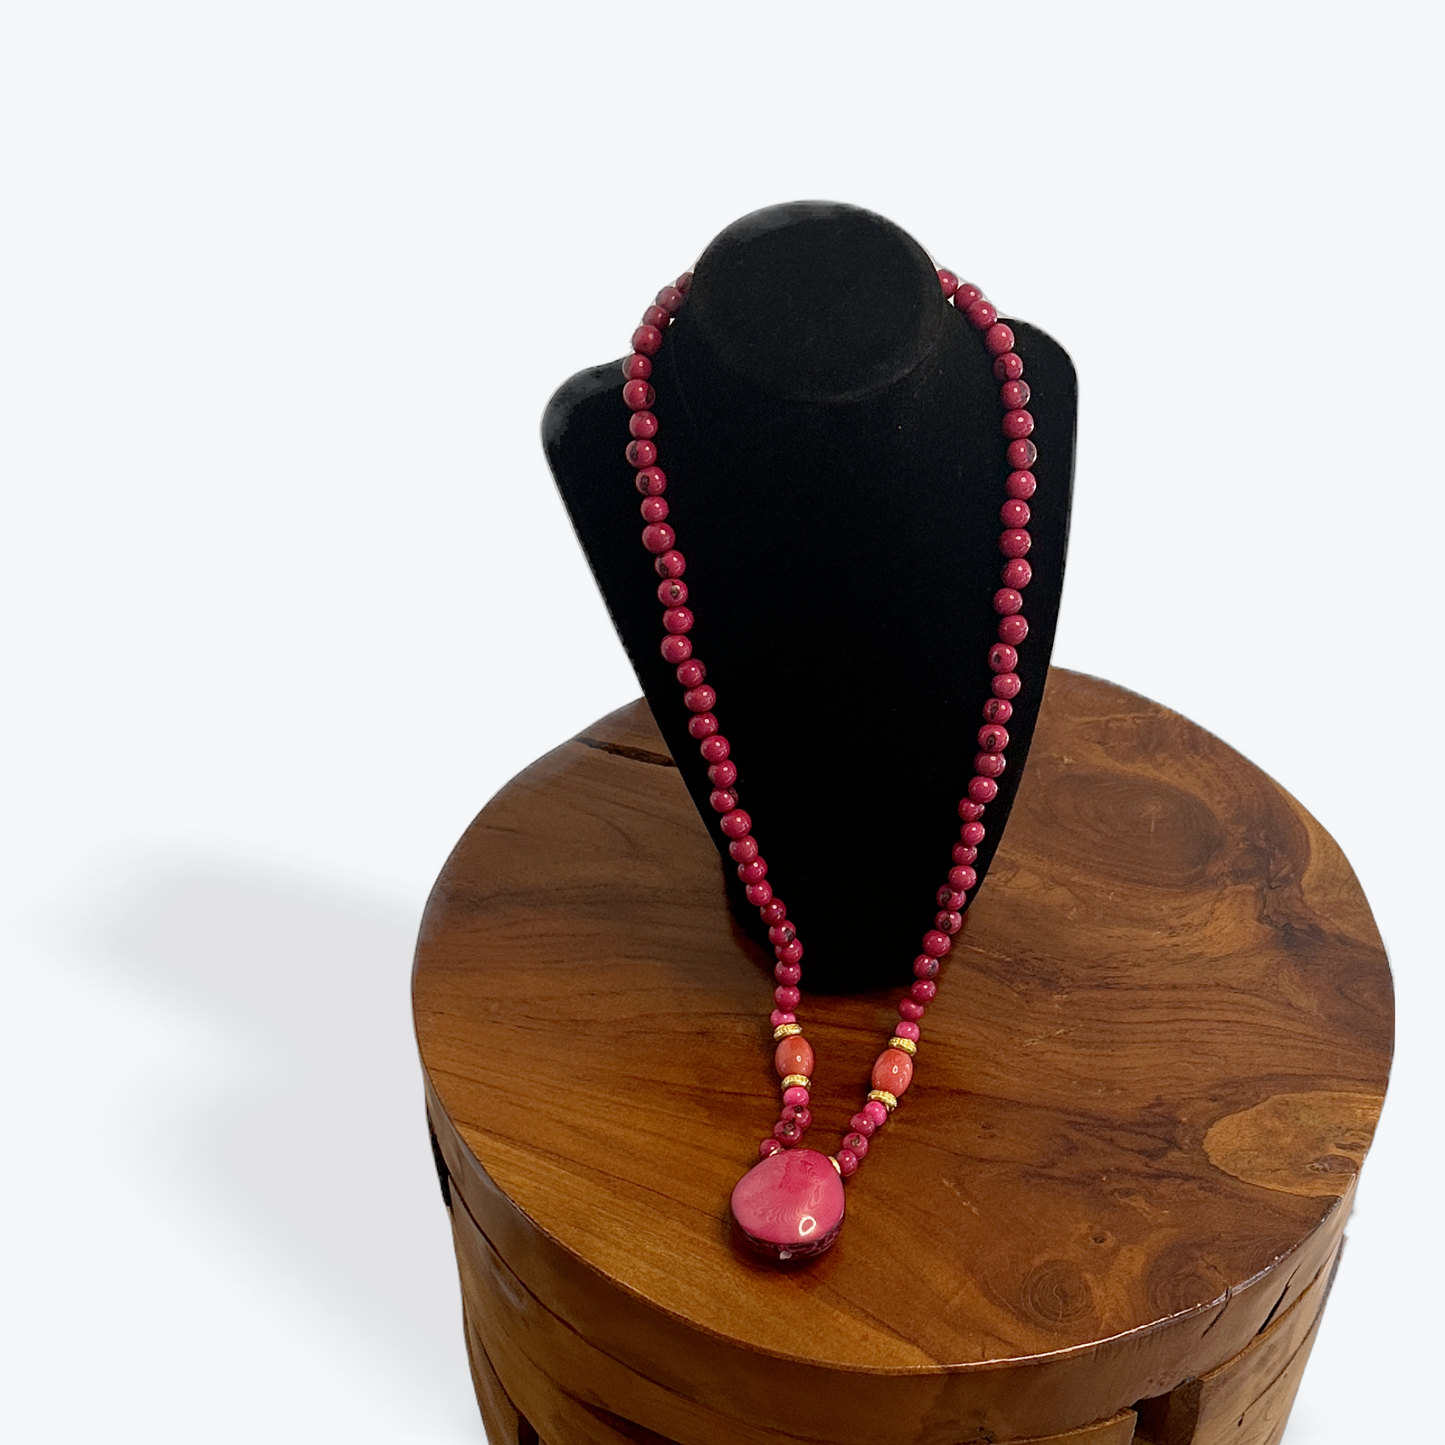 Tagua Nut Pendant Necklaces - The Hip Hat 